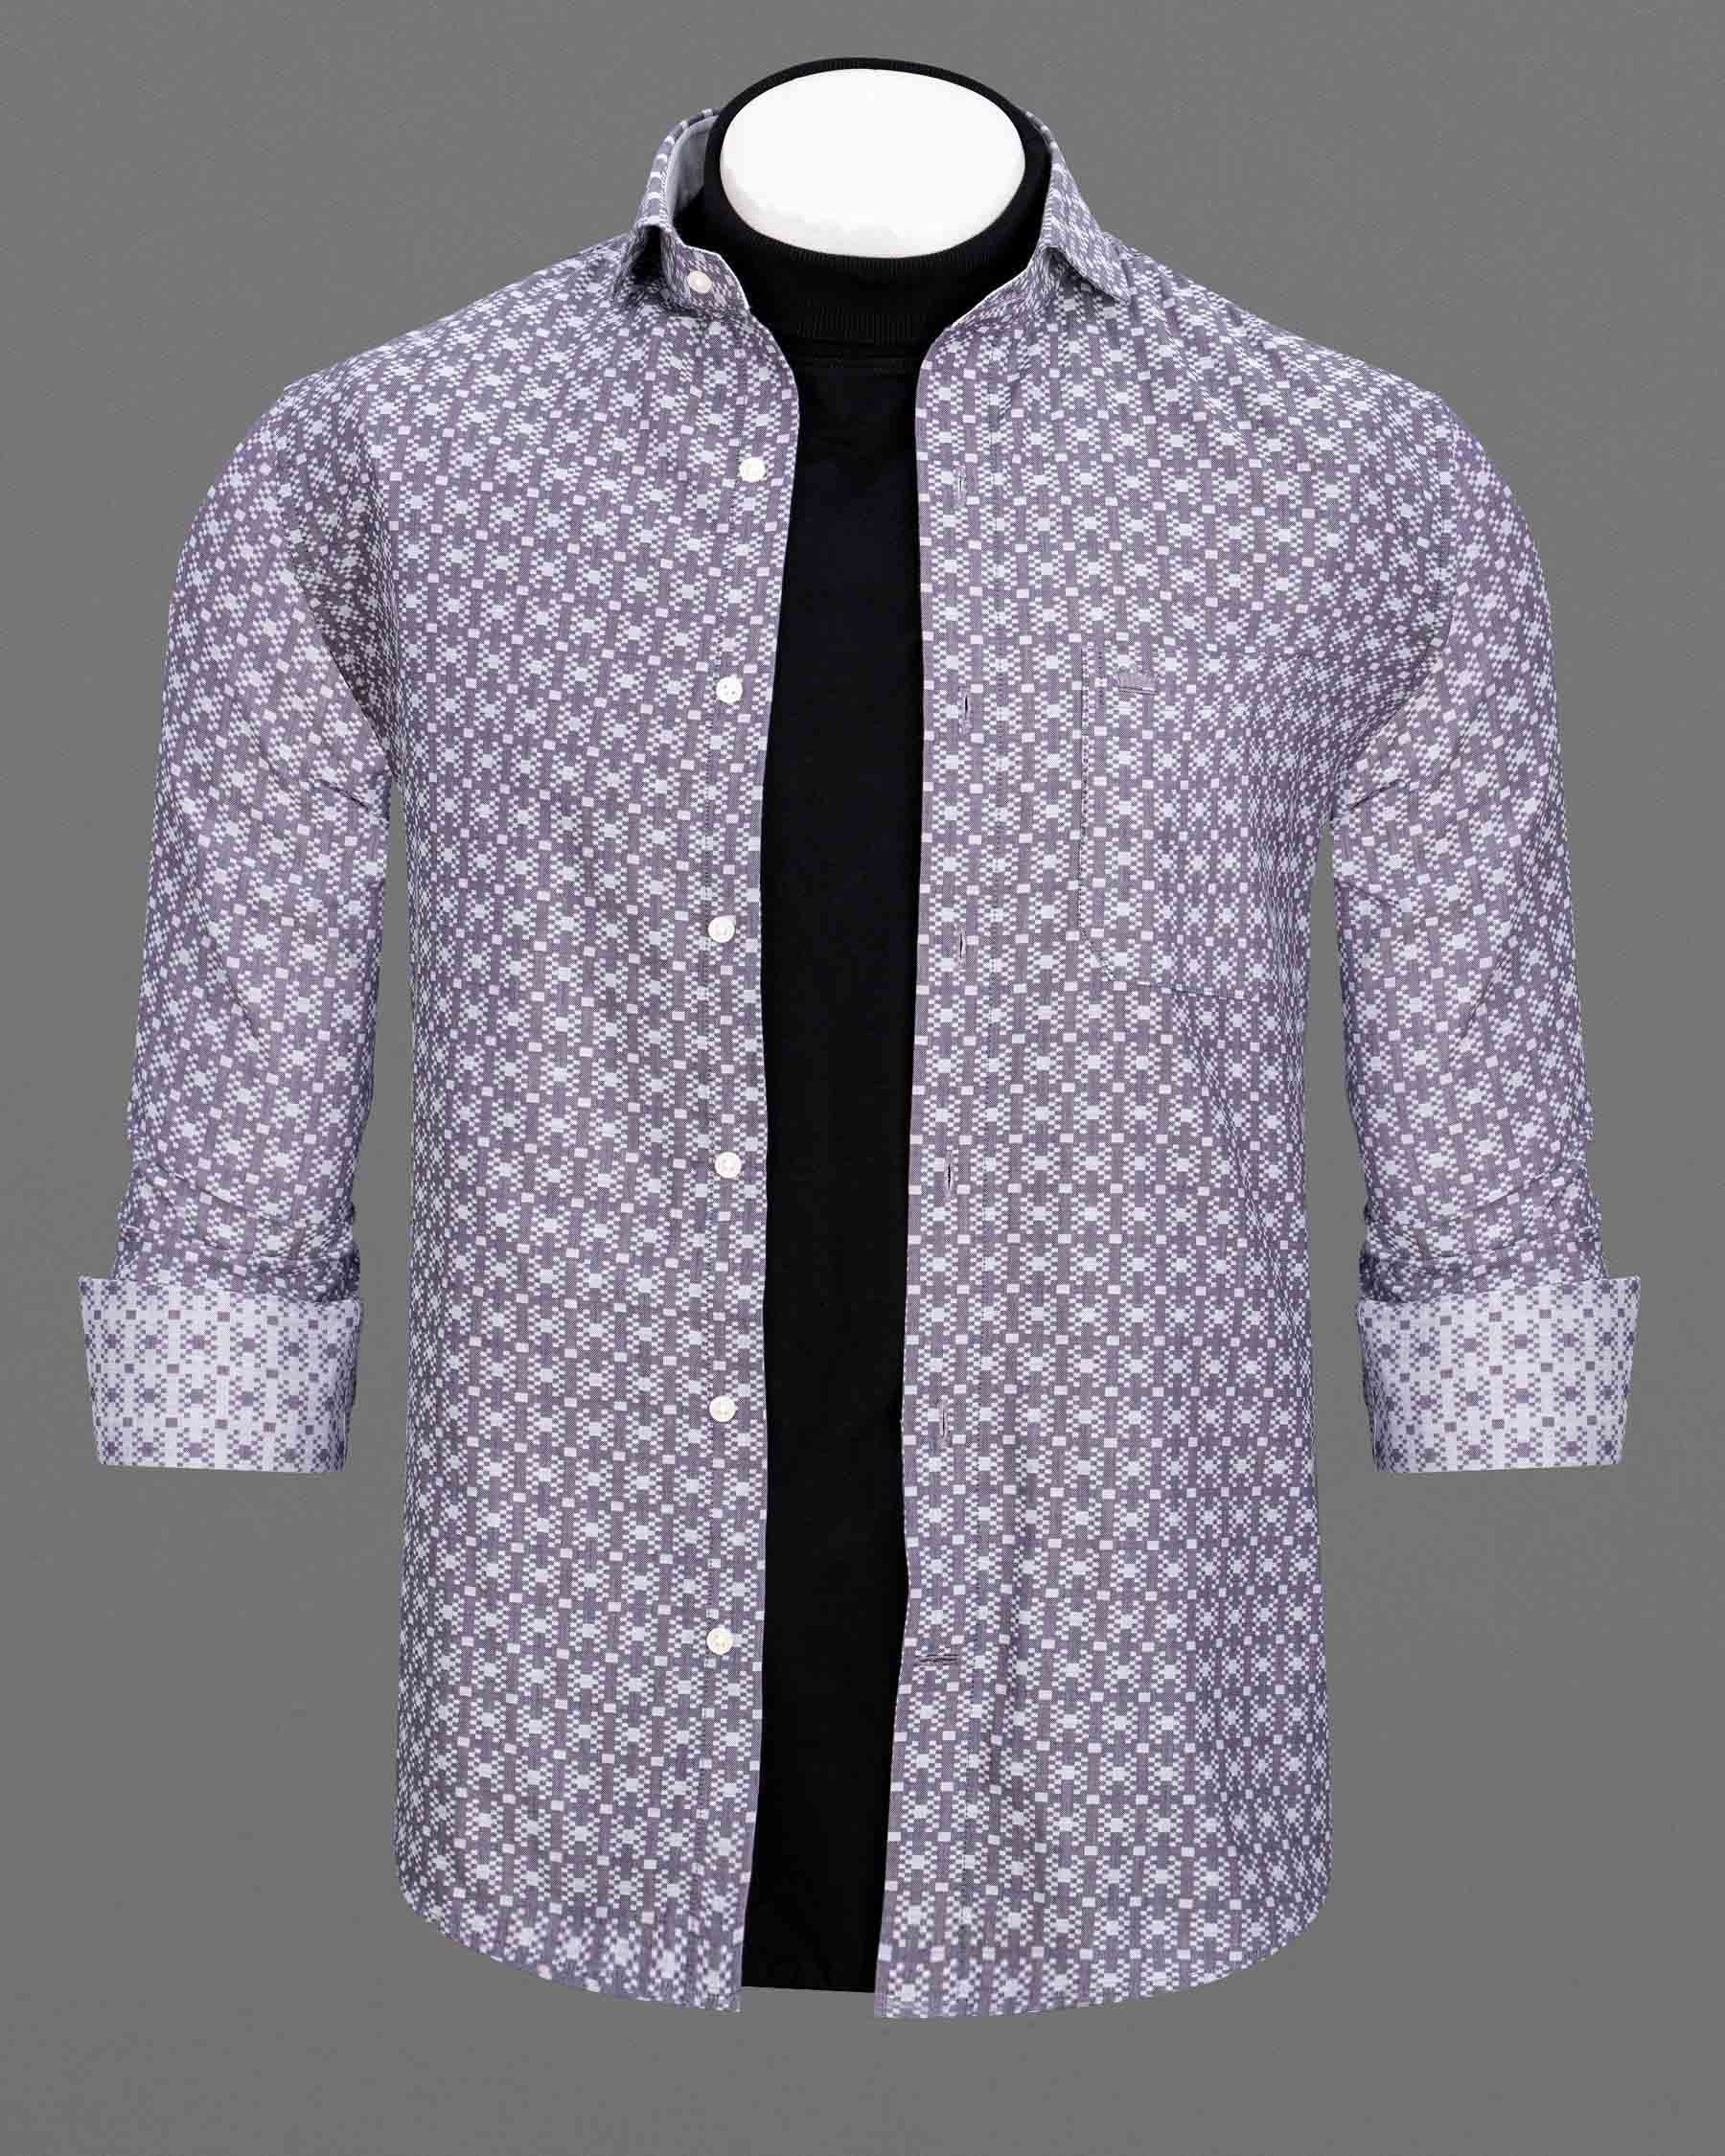 Wenage Jacquard Textured Overshirt/Shacket